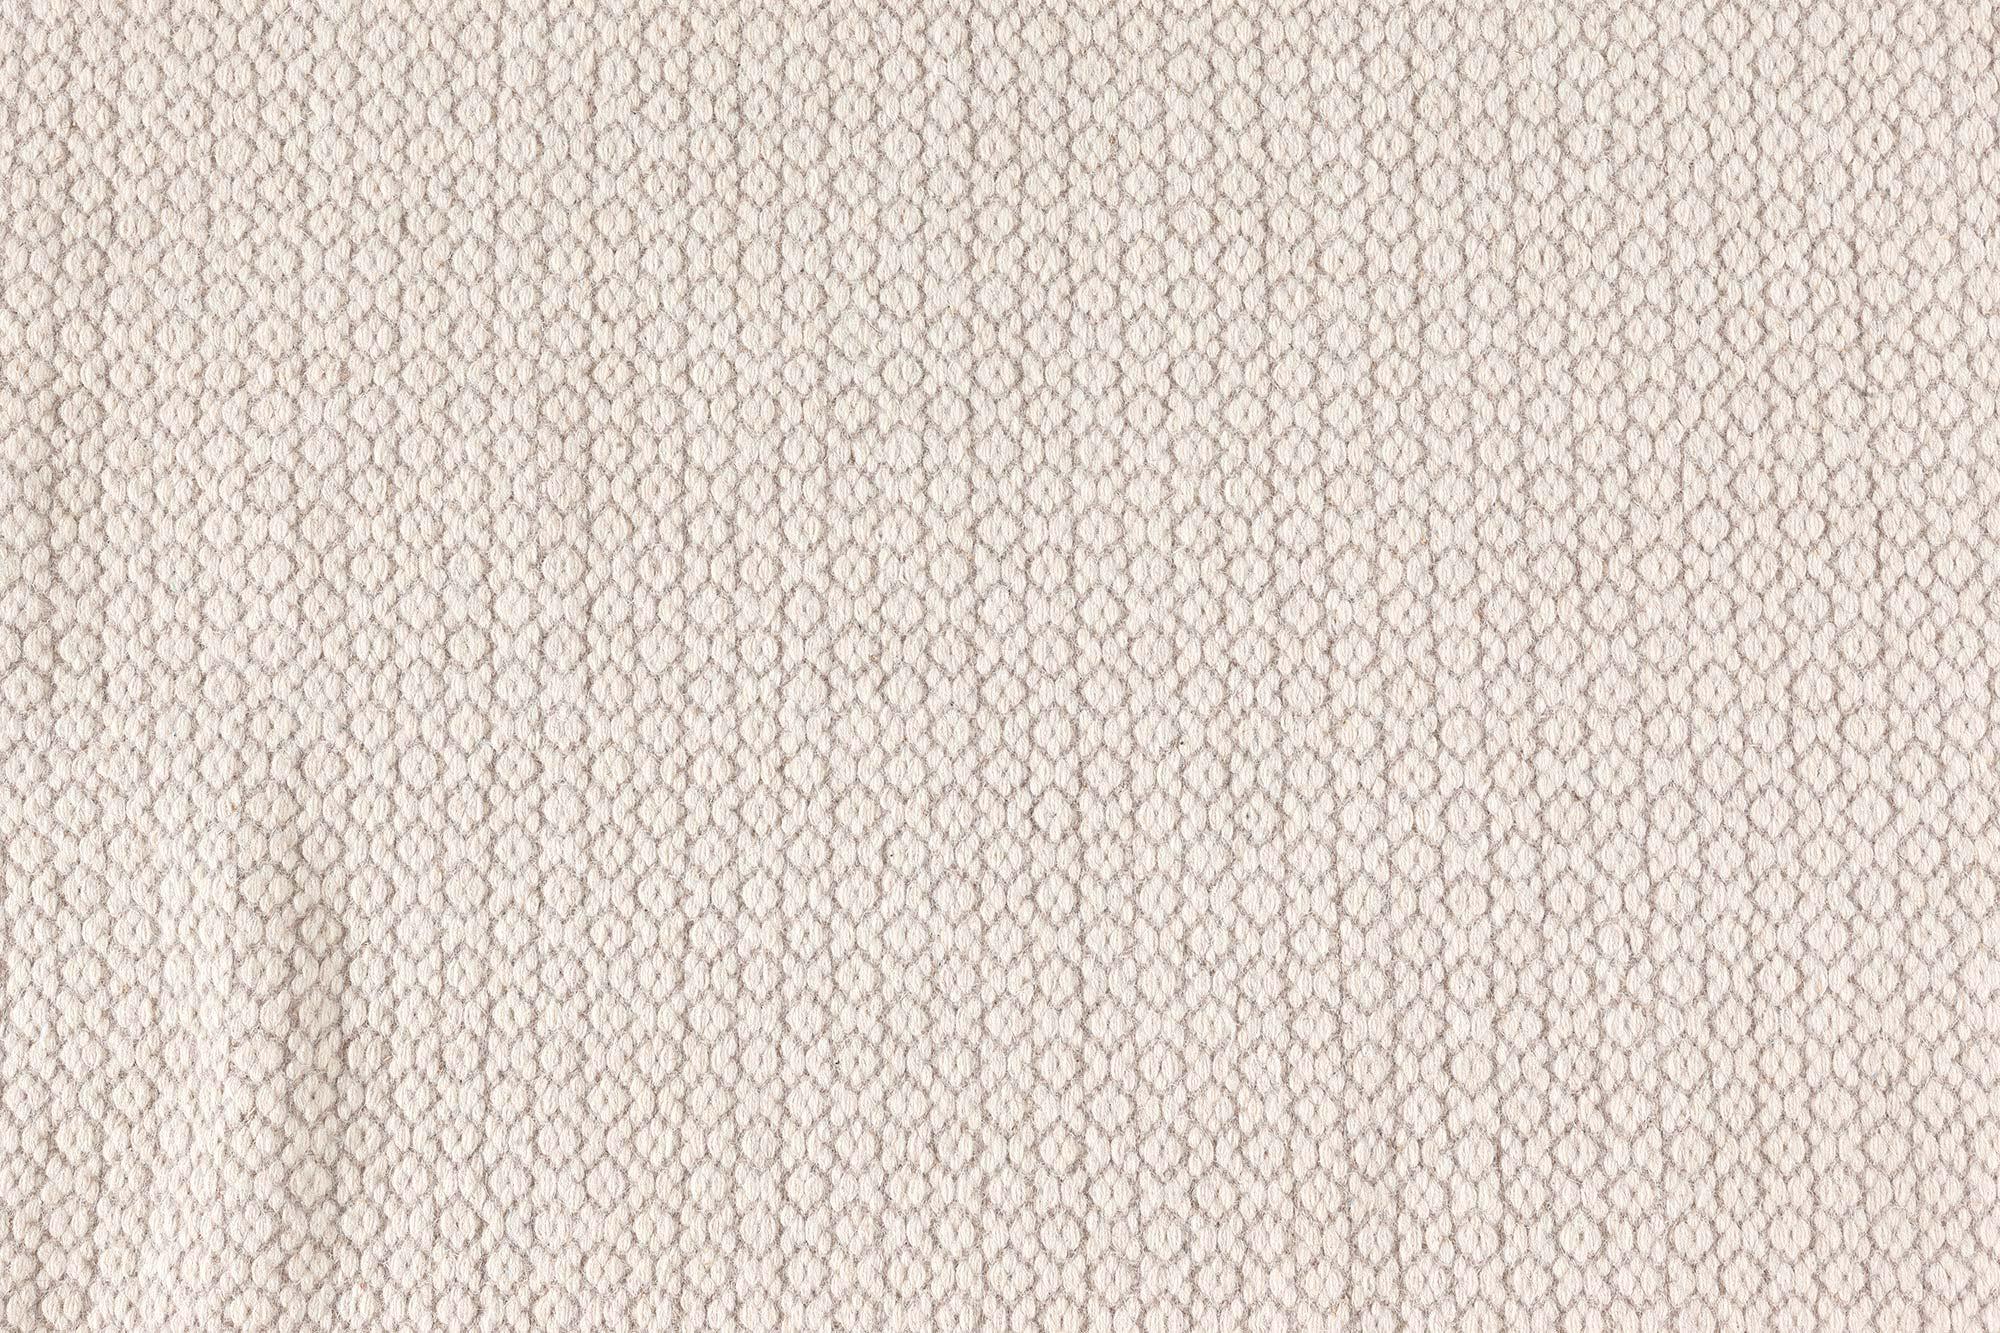 Contemporary beige flat-weave wool rug by Doris Leslie Blau.
Size: 14'2